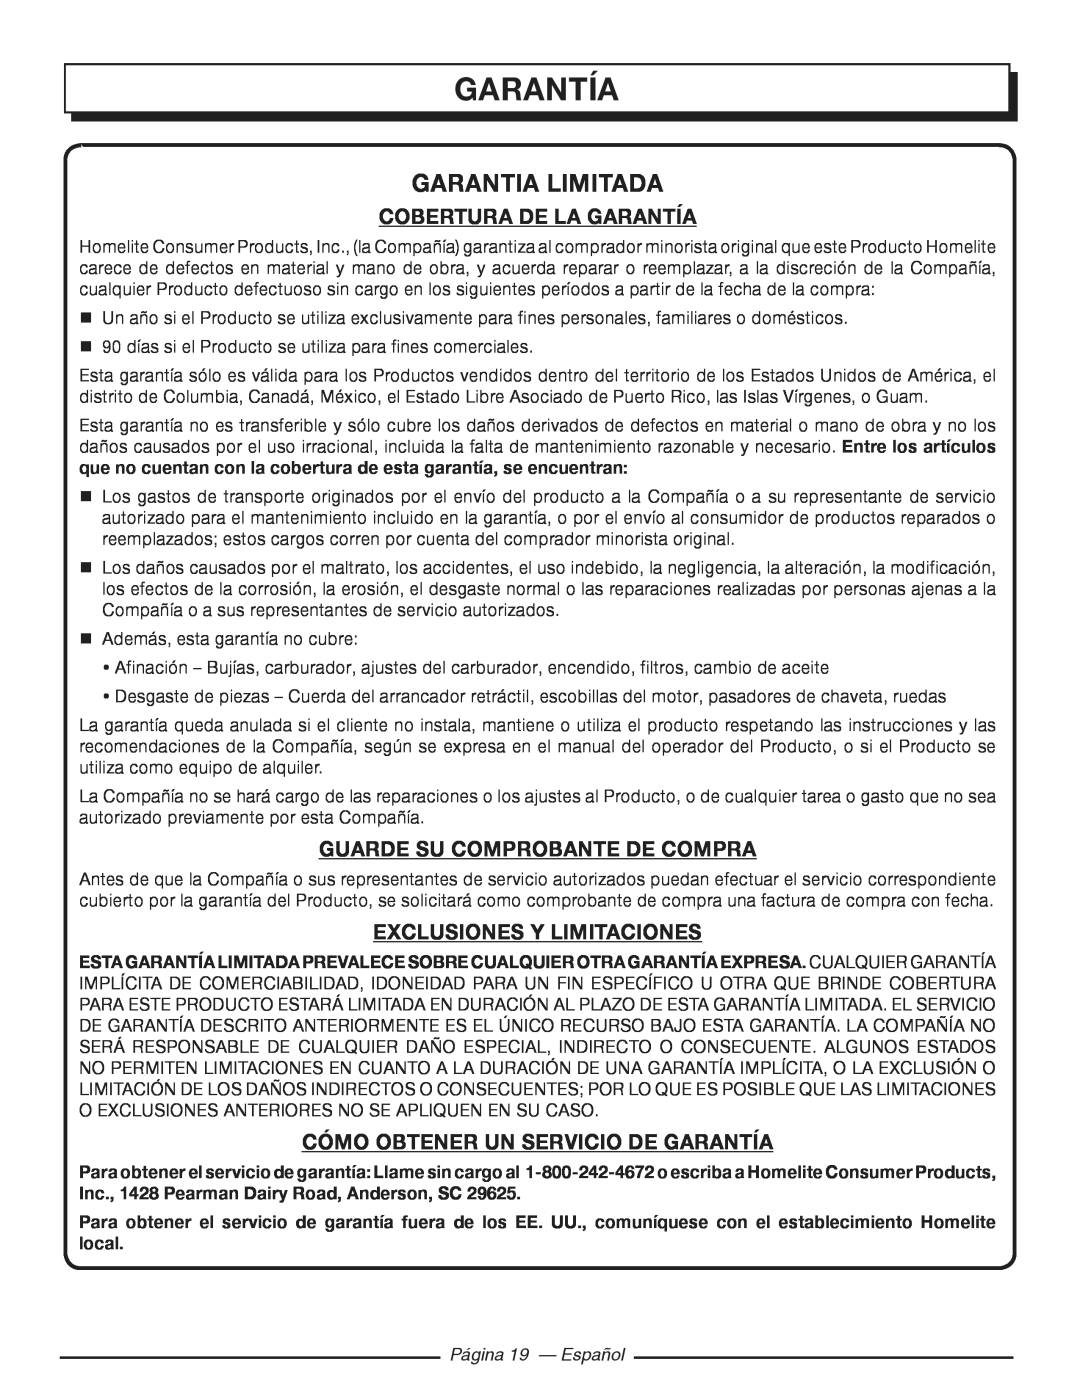 Homelite HGCA3000 Garantia Limitada, Cobertura De La Garantía, Guarde Su Comprobante De Compra, Página 19 - Español 